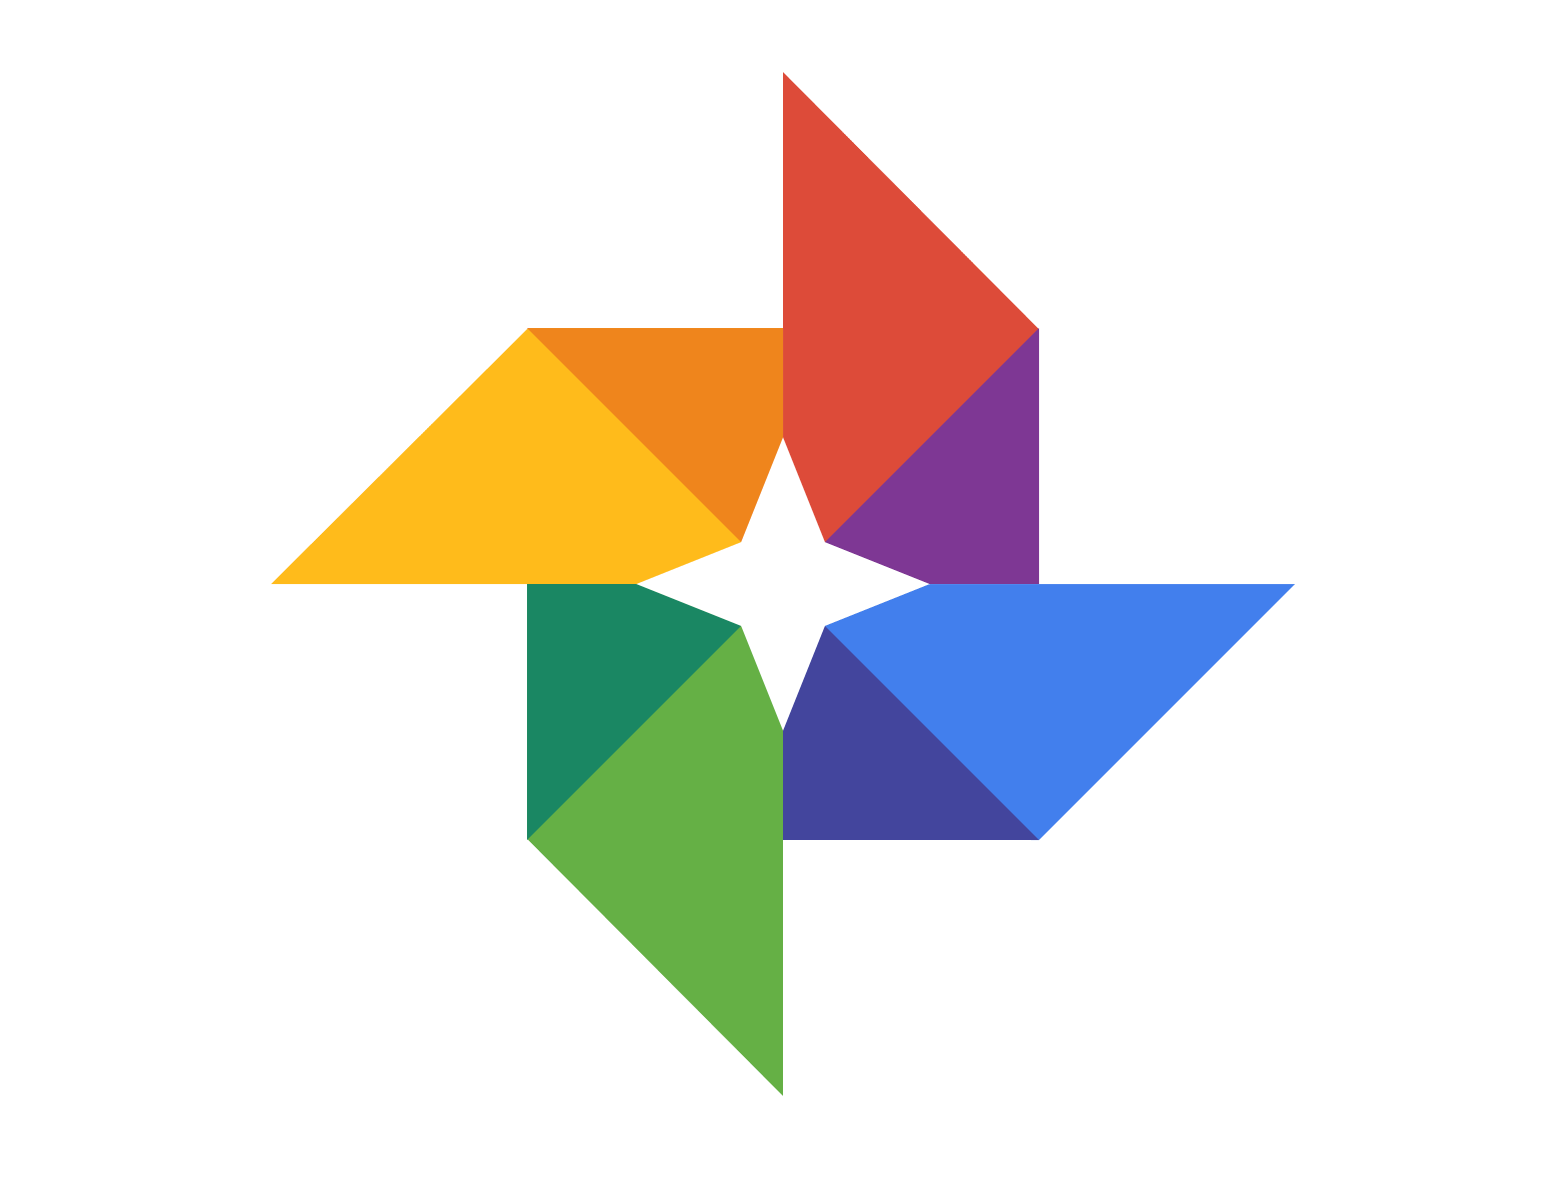 Google afegeix una nova funció a l'aplicació Fotos: els usuaris ara poden veure quant de temps han de restaurar qualsevol imatge suprimida